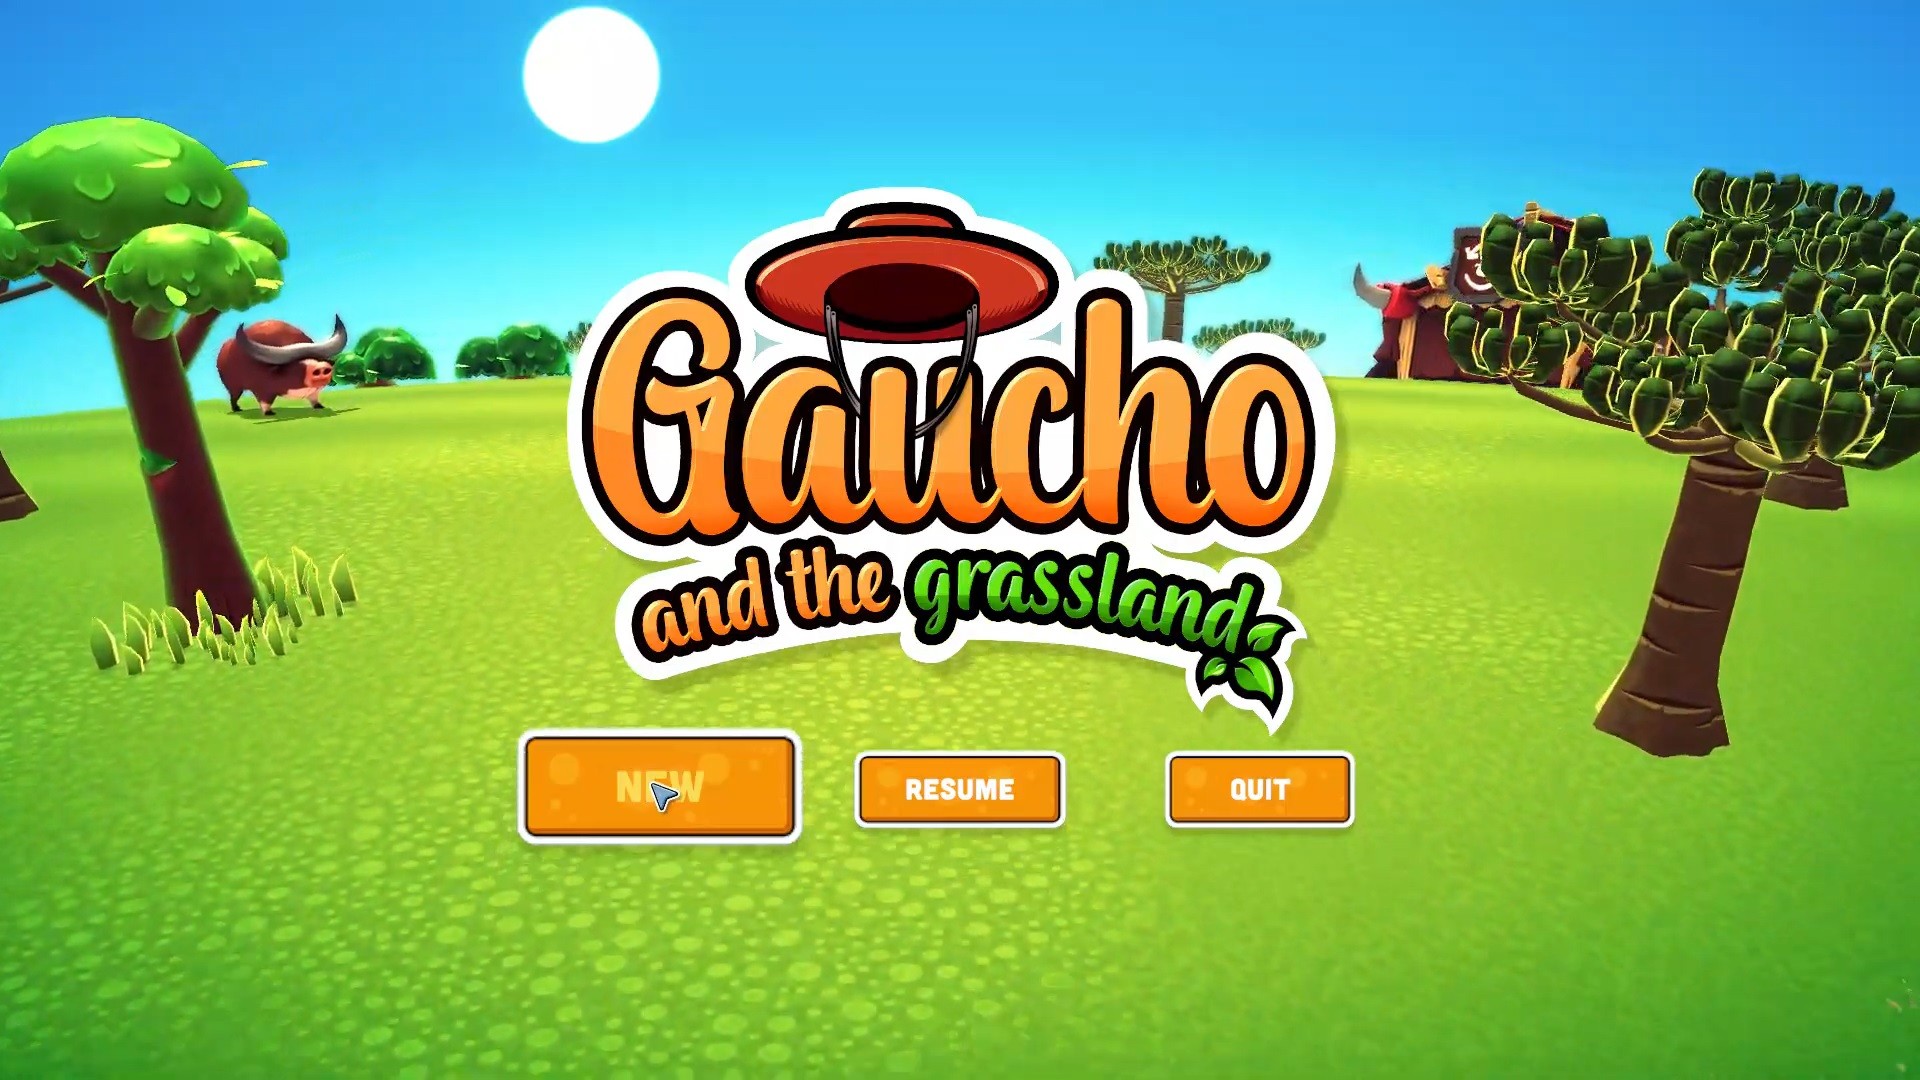 Gaucho and the Grassland no Steam